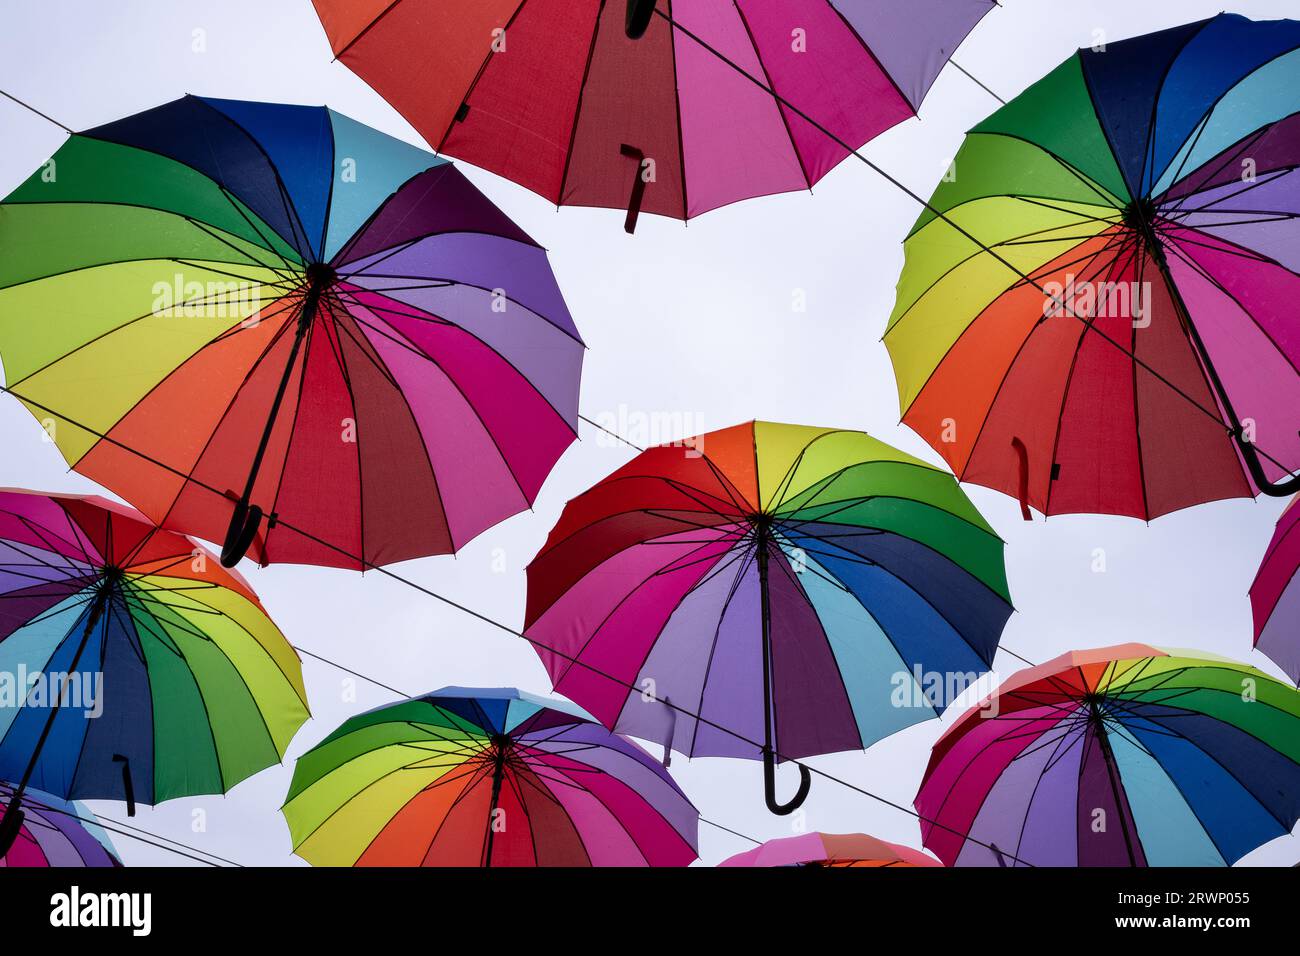 Beaucoup de parapluies de couleur arc-en-ciel contre le ciel Banque D'Images